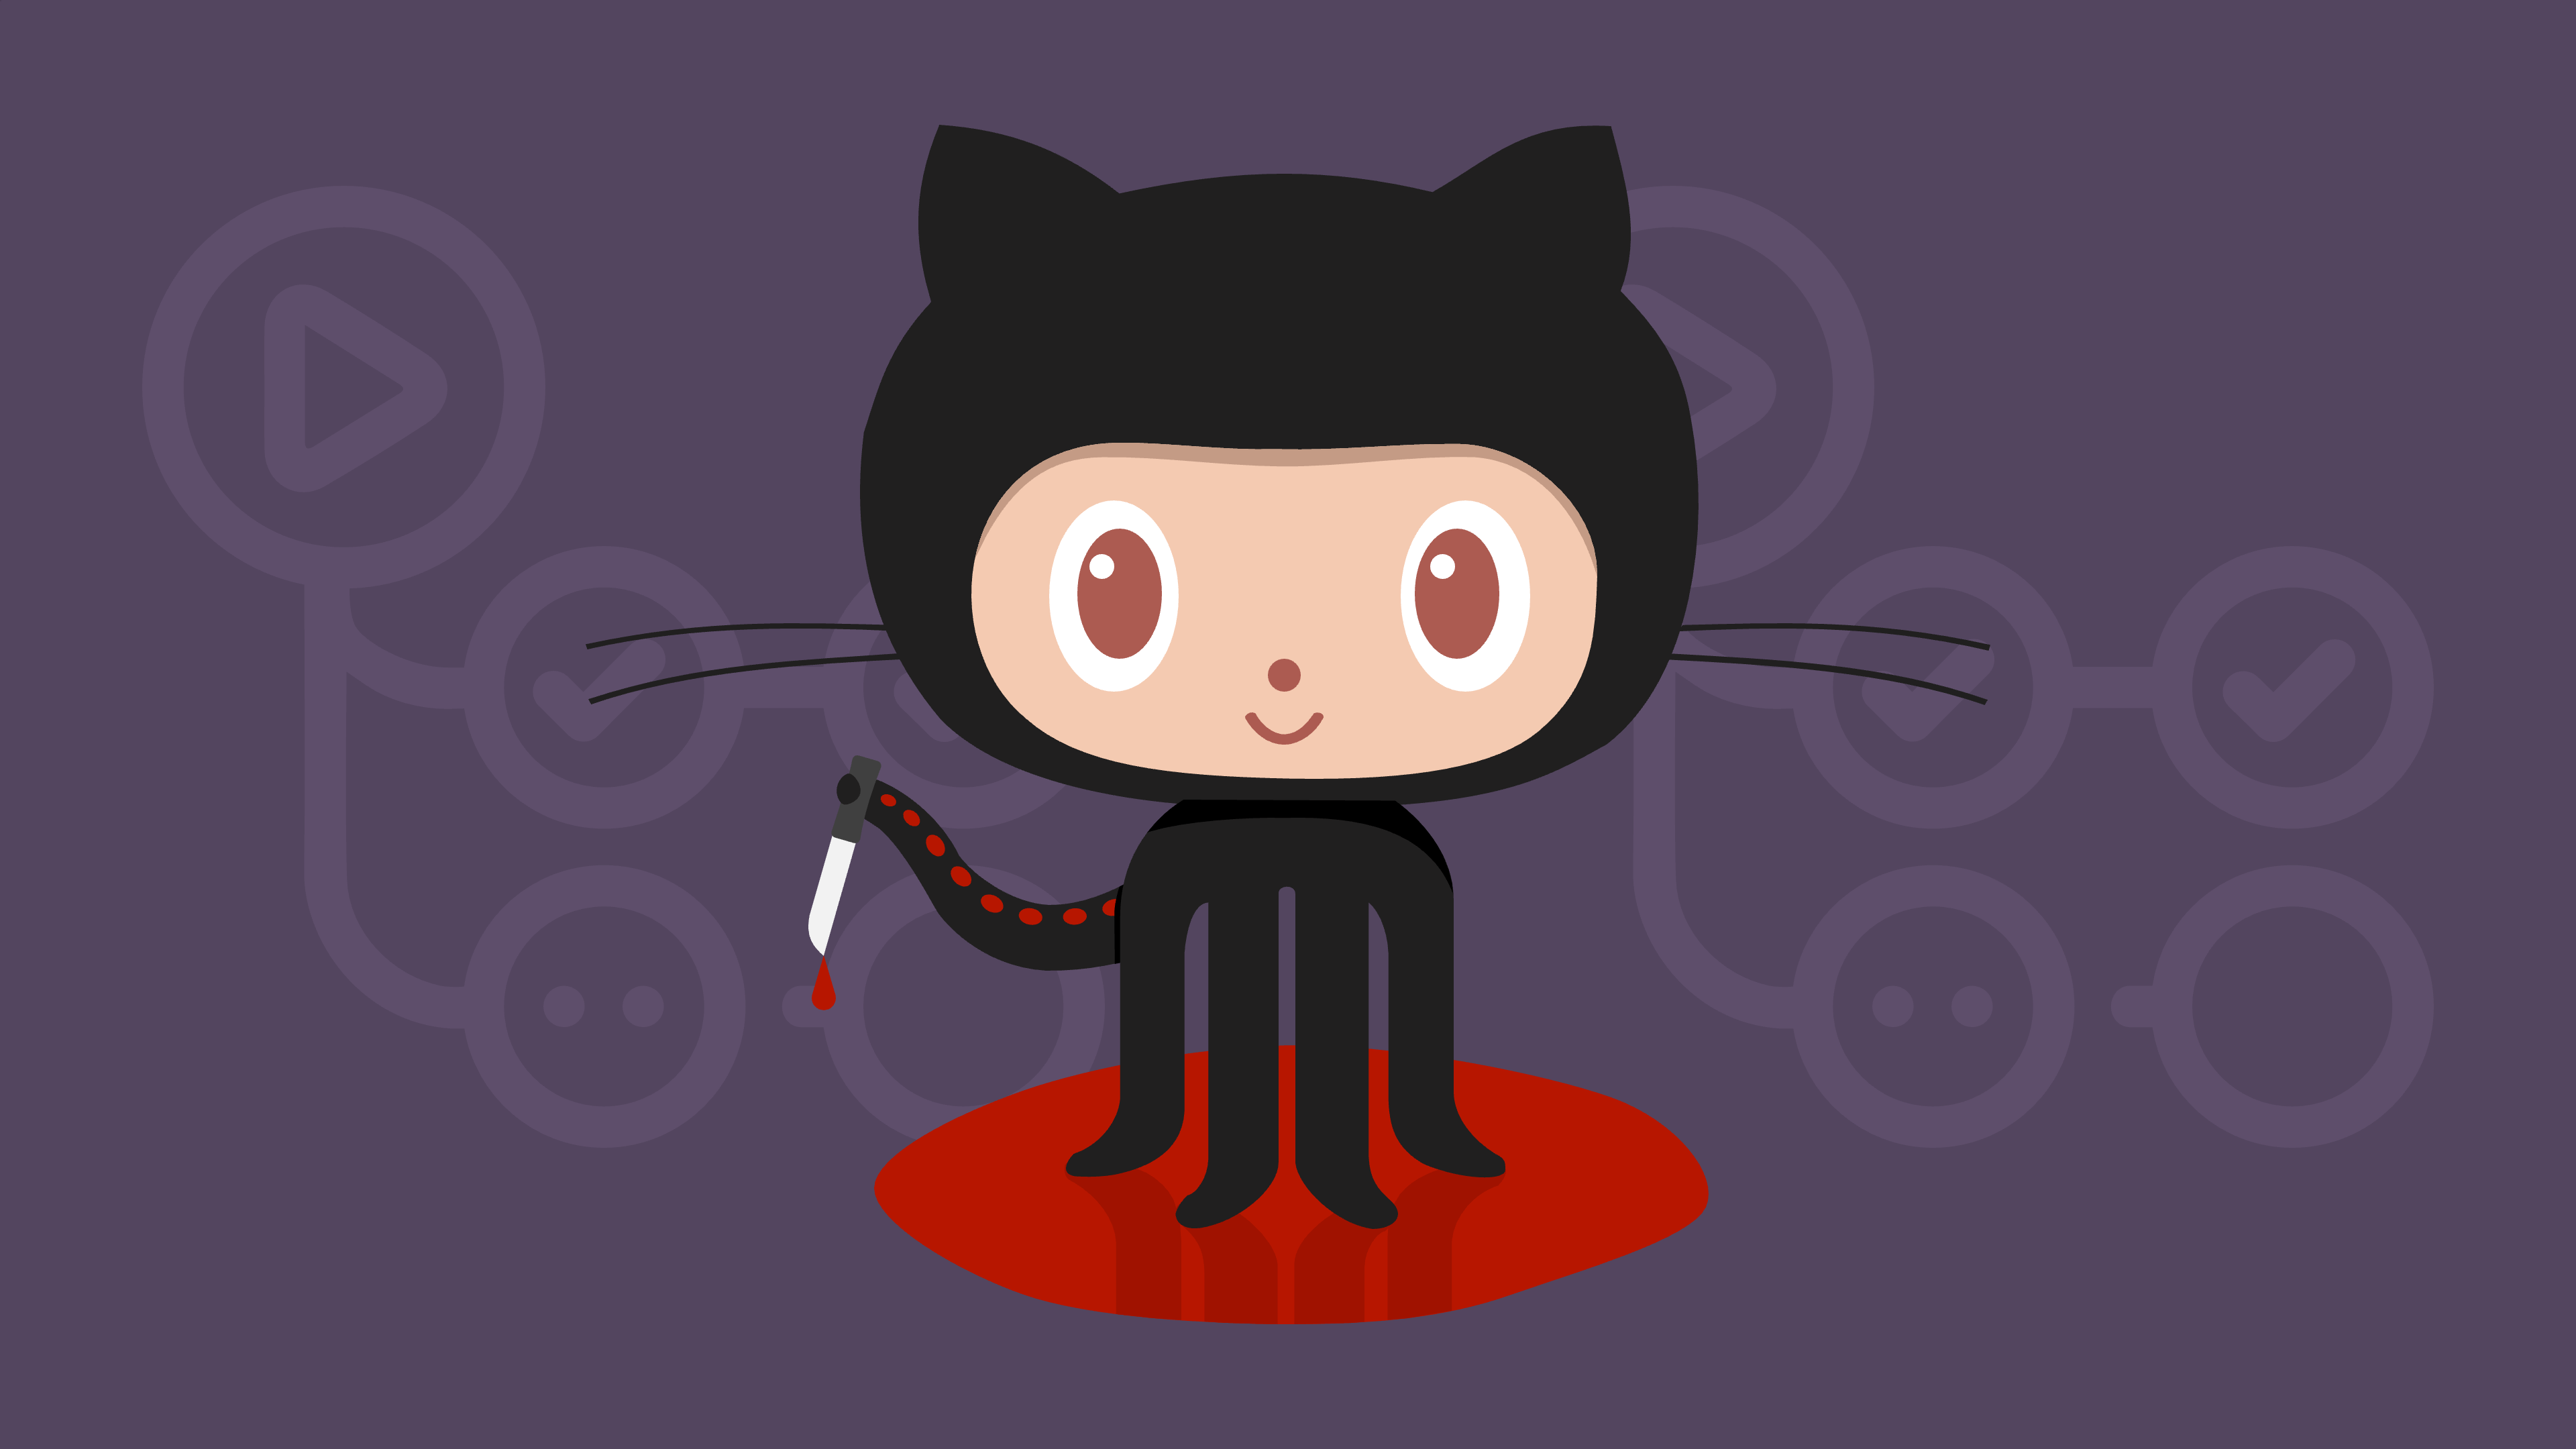 GitHub’s Octocat holds a bleeding knife